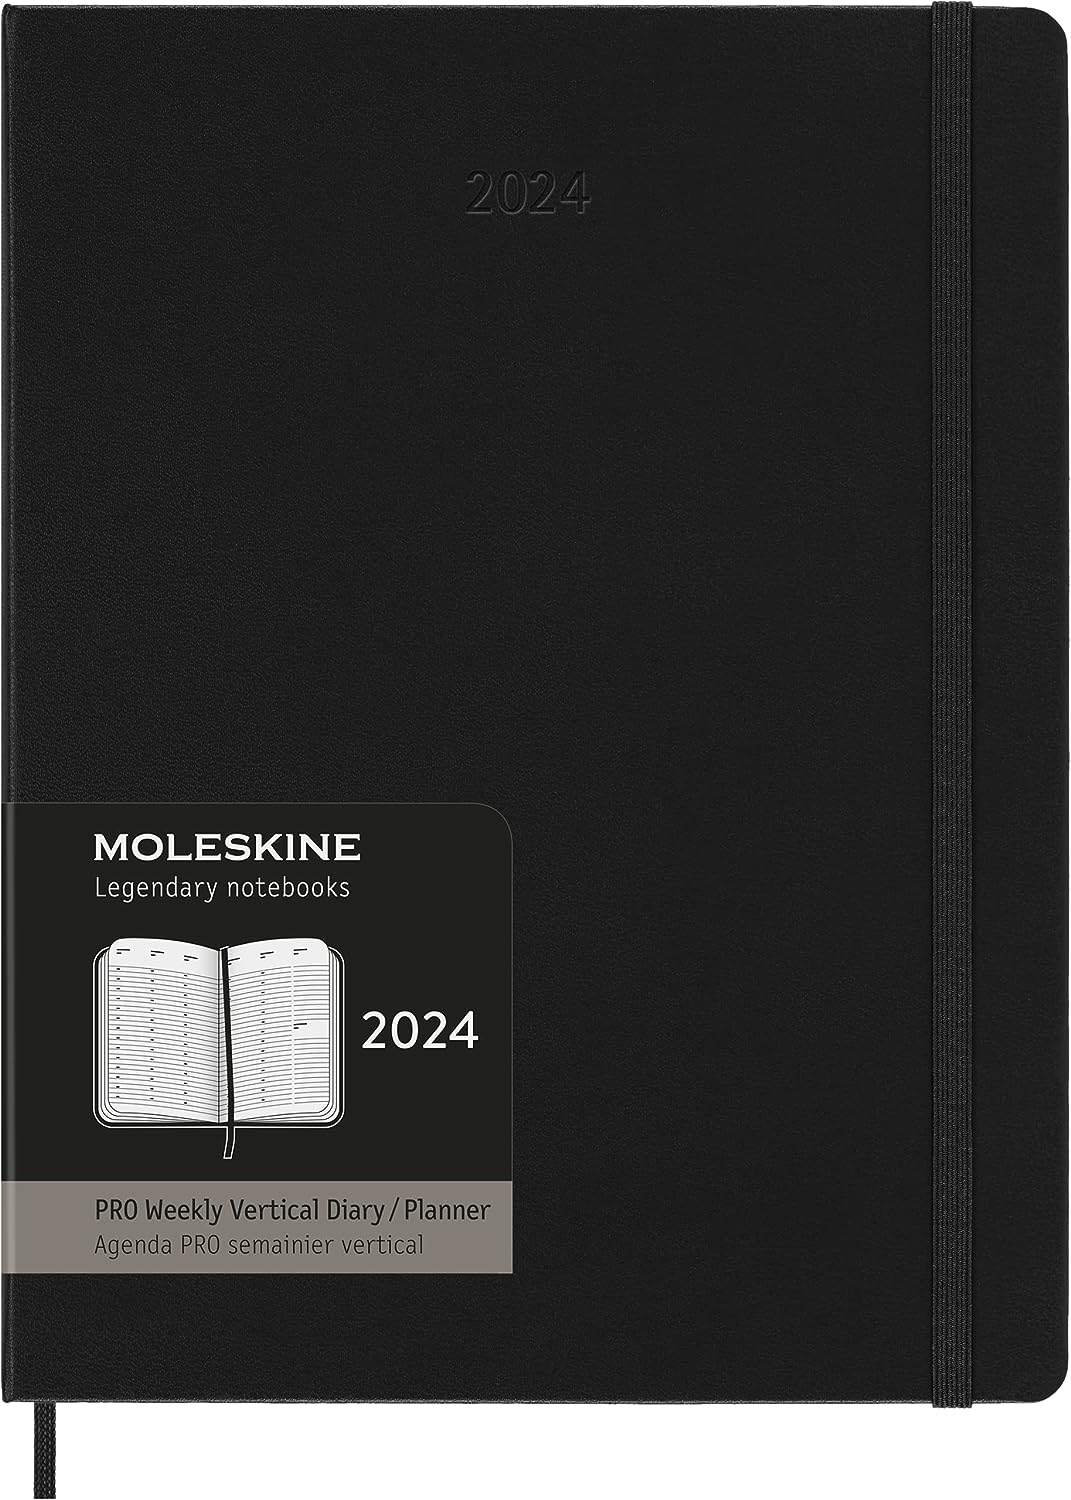 L'agenda PERFETTA di MOLESKINE per il tuo 2024 è ora a META' PREZZO!